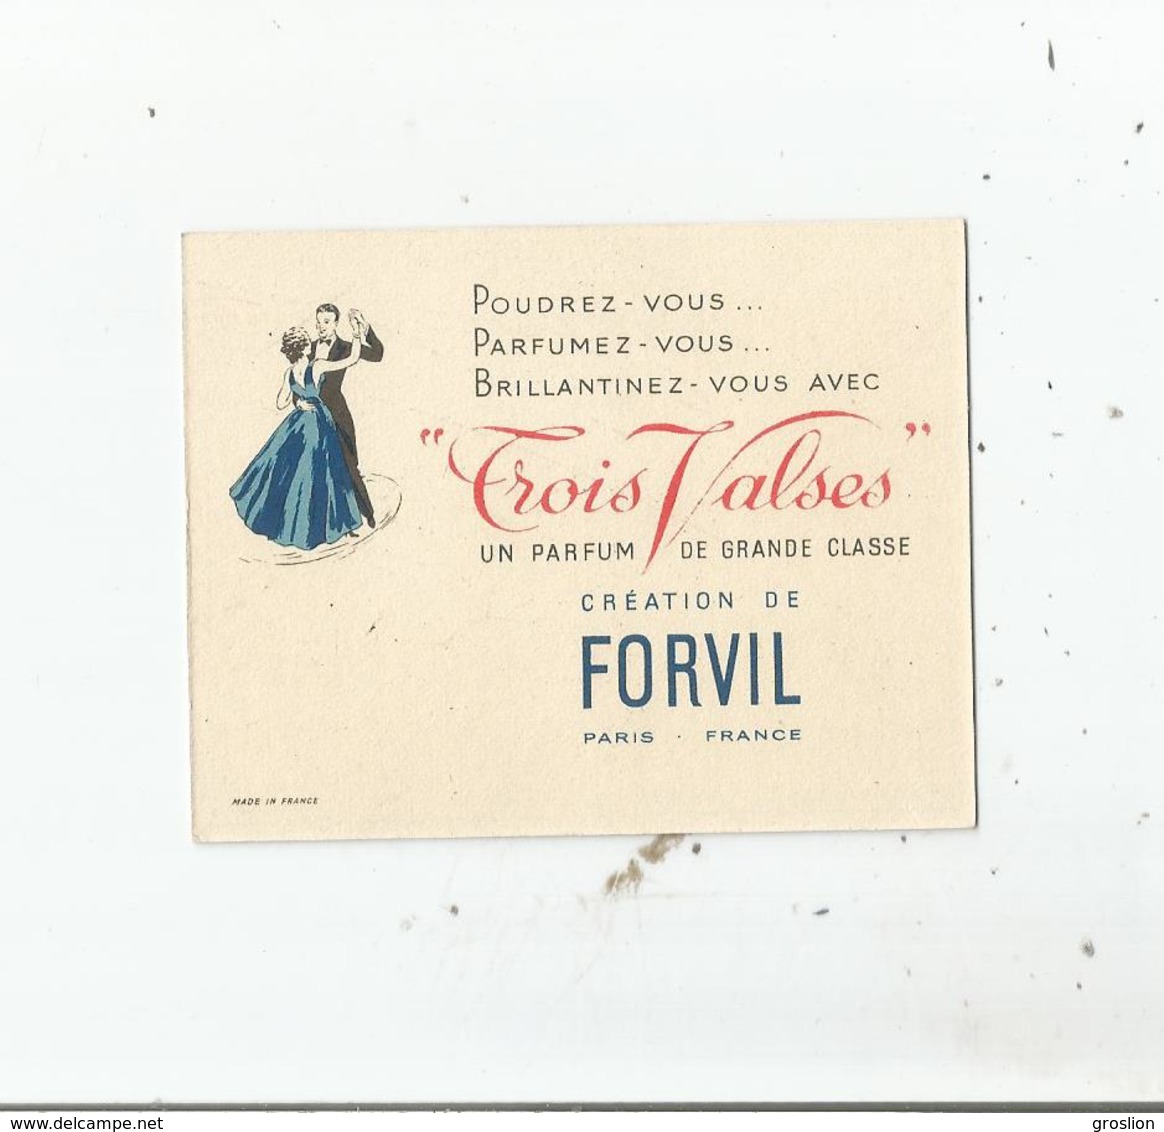 FORVIL "TROIS VALSES" CARTE PARFUMEE CALENDRIER DE 1955 - Vintage (until 1960)